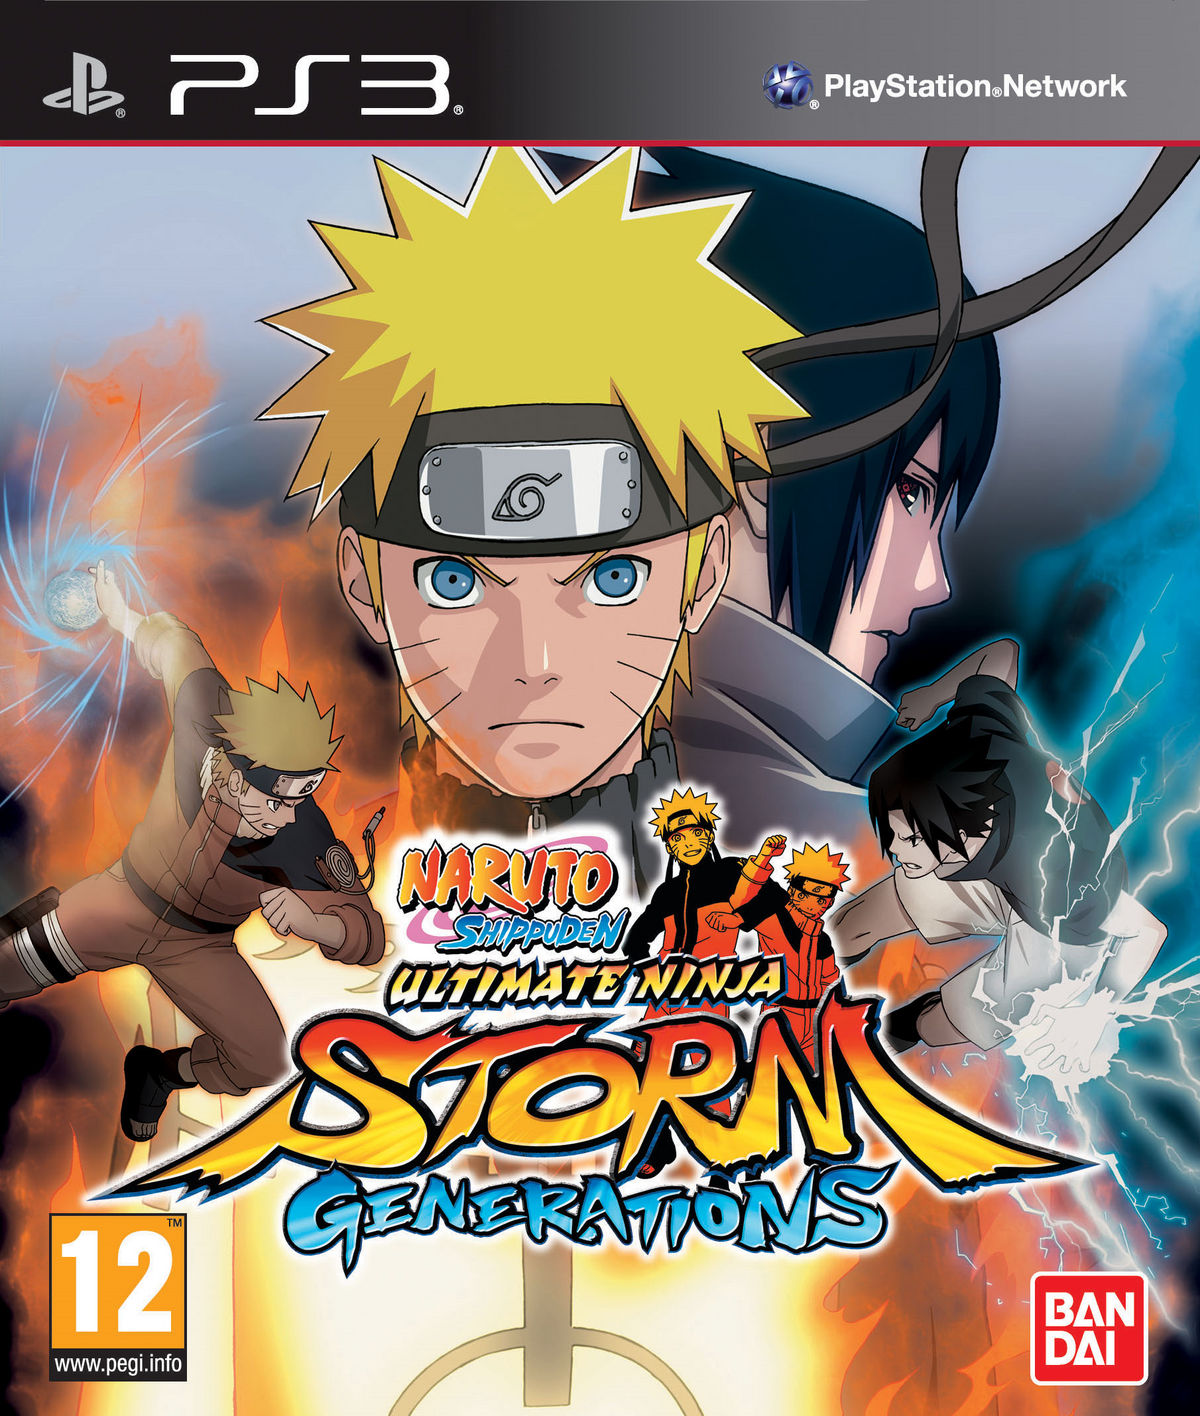 Sakura Haruno Naruto Uzumaki Sasuke Uchiha Kakashi Hatake Naruto Shippuden:  Ultimate Ninja Storm 3 PNG, Clipart